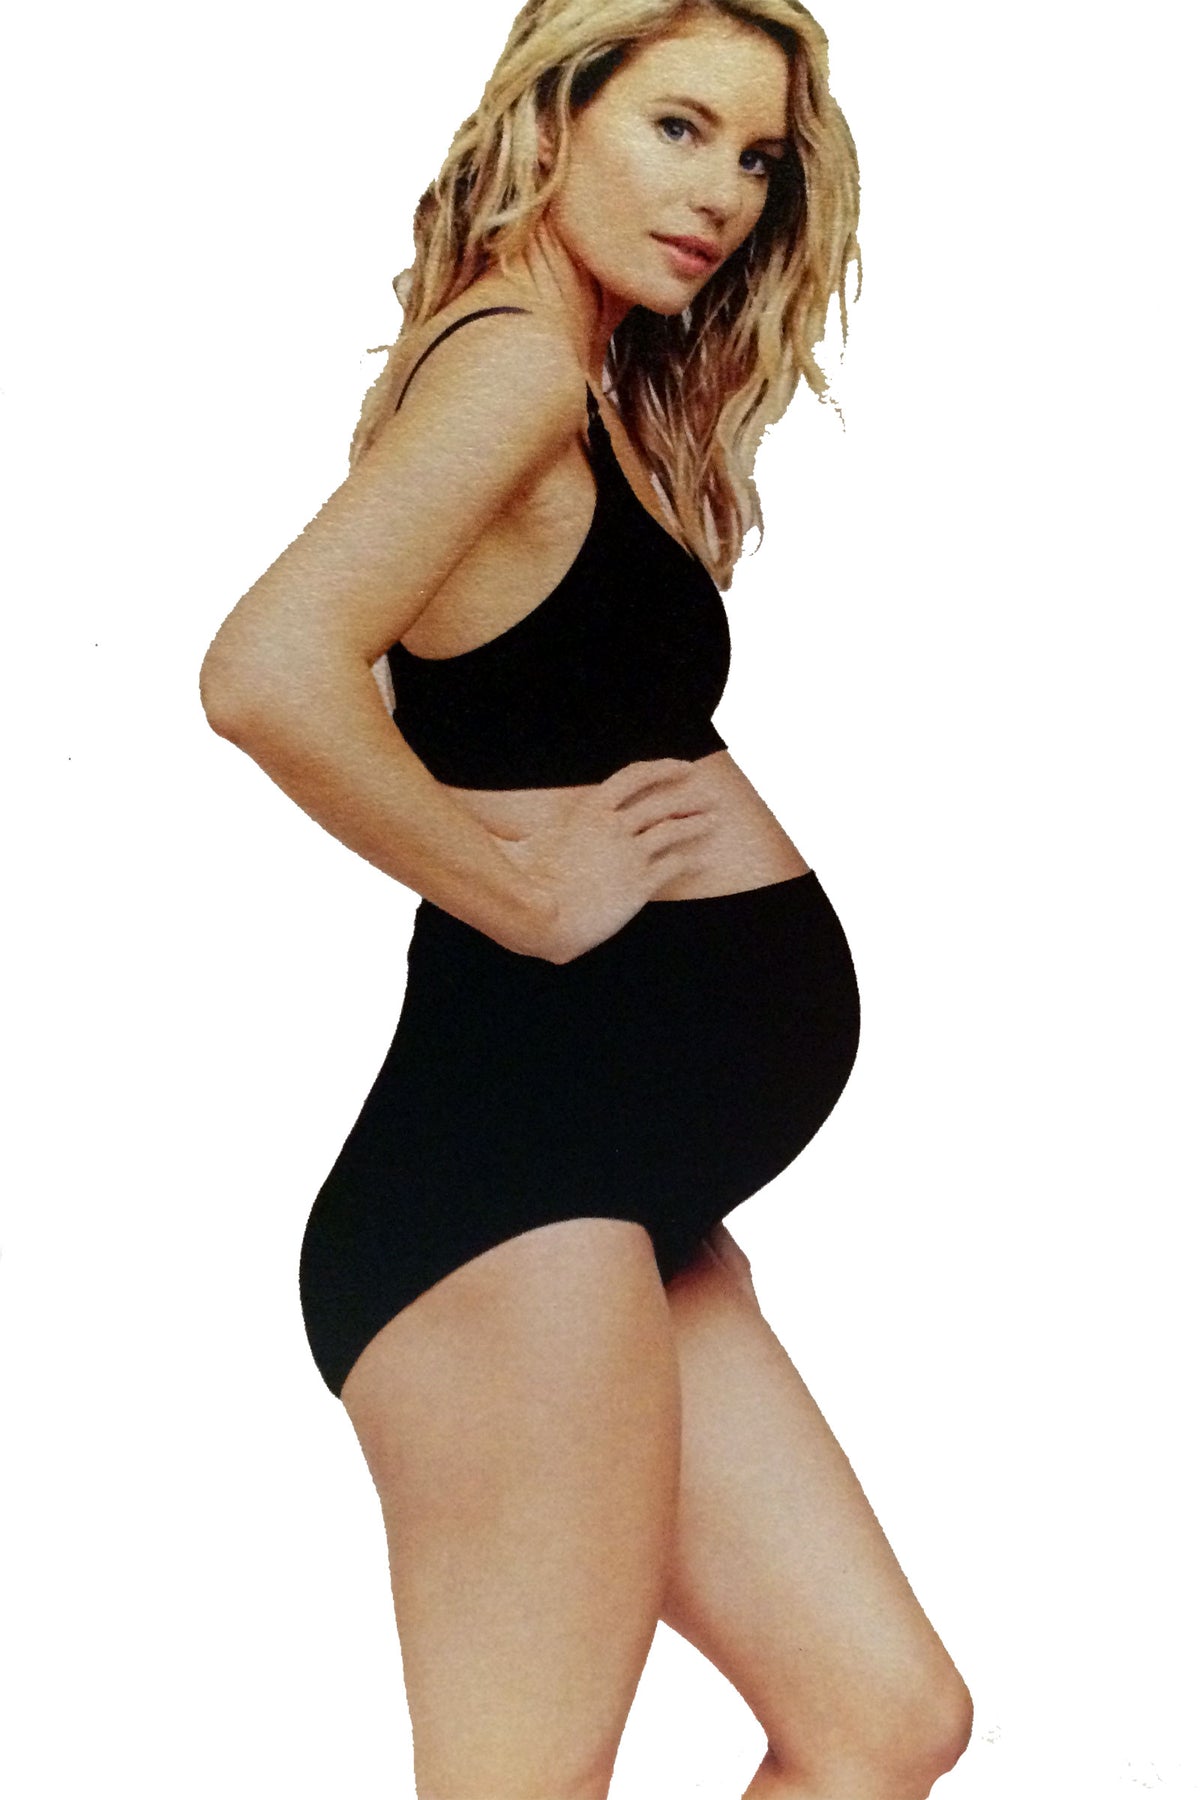 Seamless Maternity Underwear - Shop Seamless Pregnancy Underwear